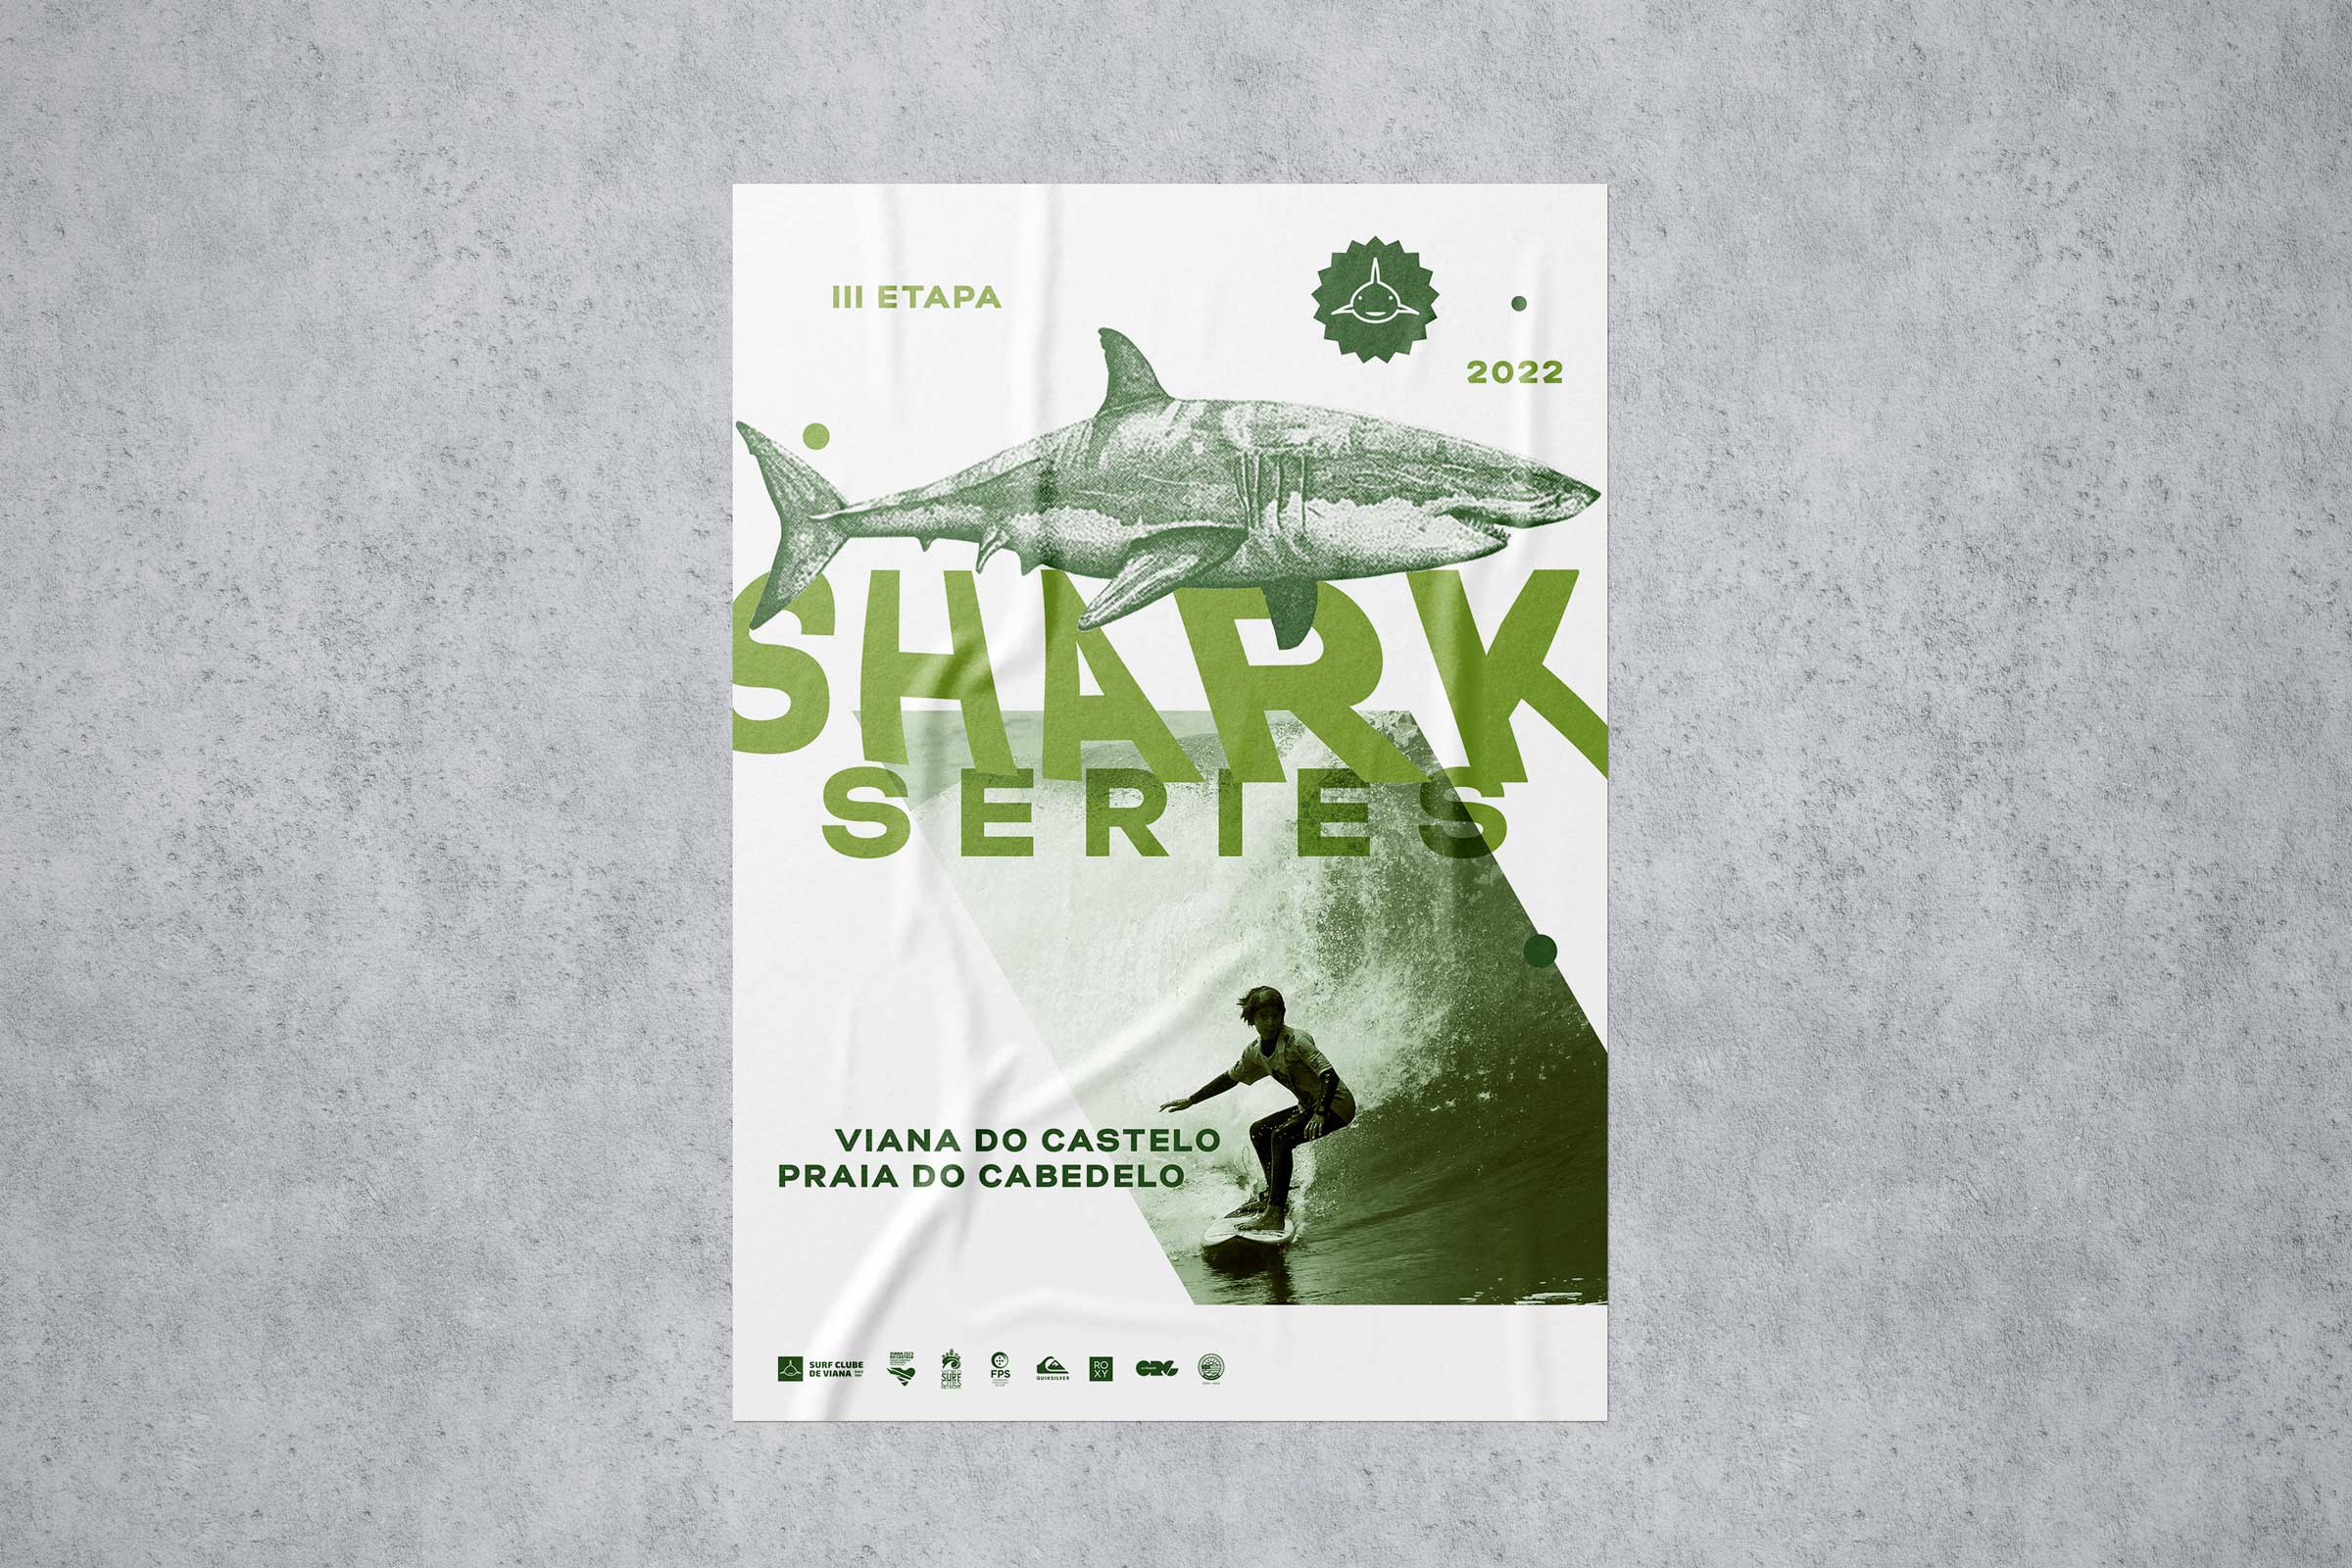 Shark Series